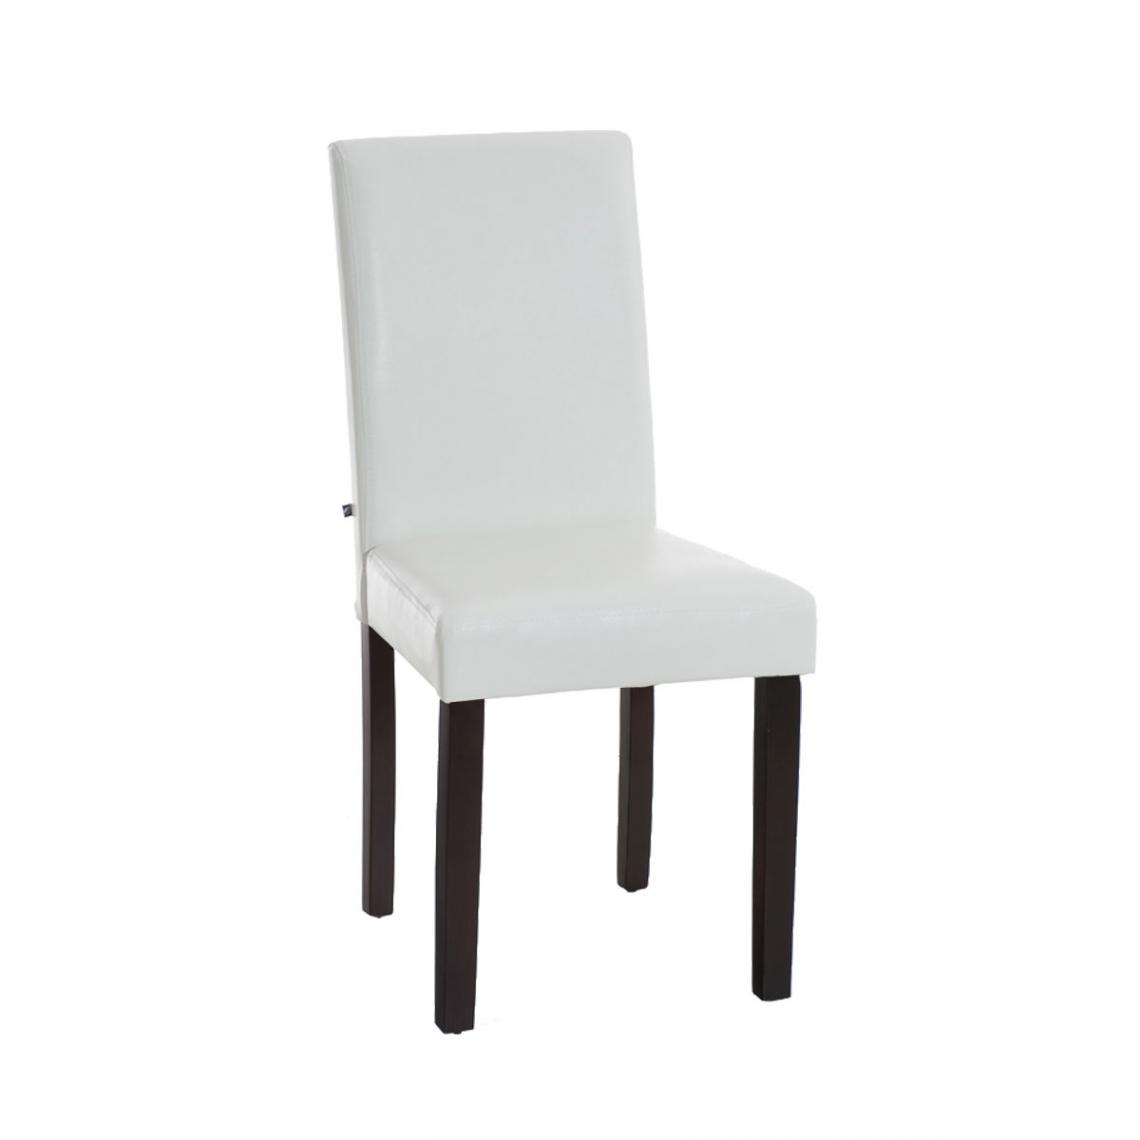 Icaverne - Inedit Chaise de salle à manger serie Rabat couleur cappuccino / blanc - Chaises